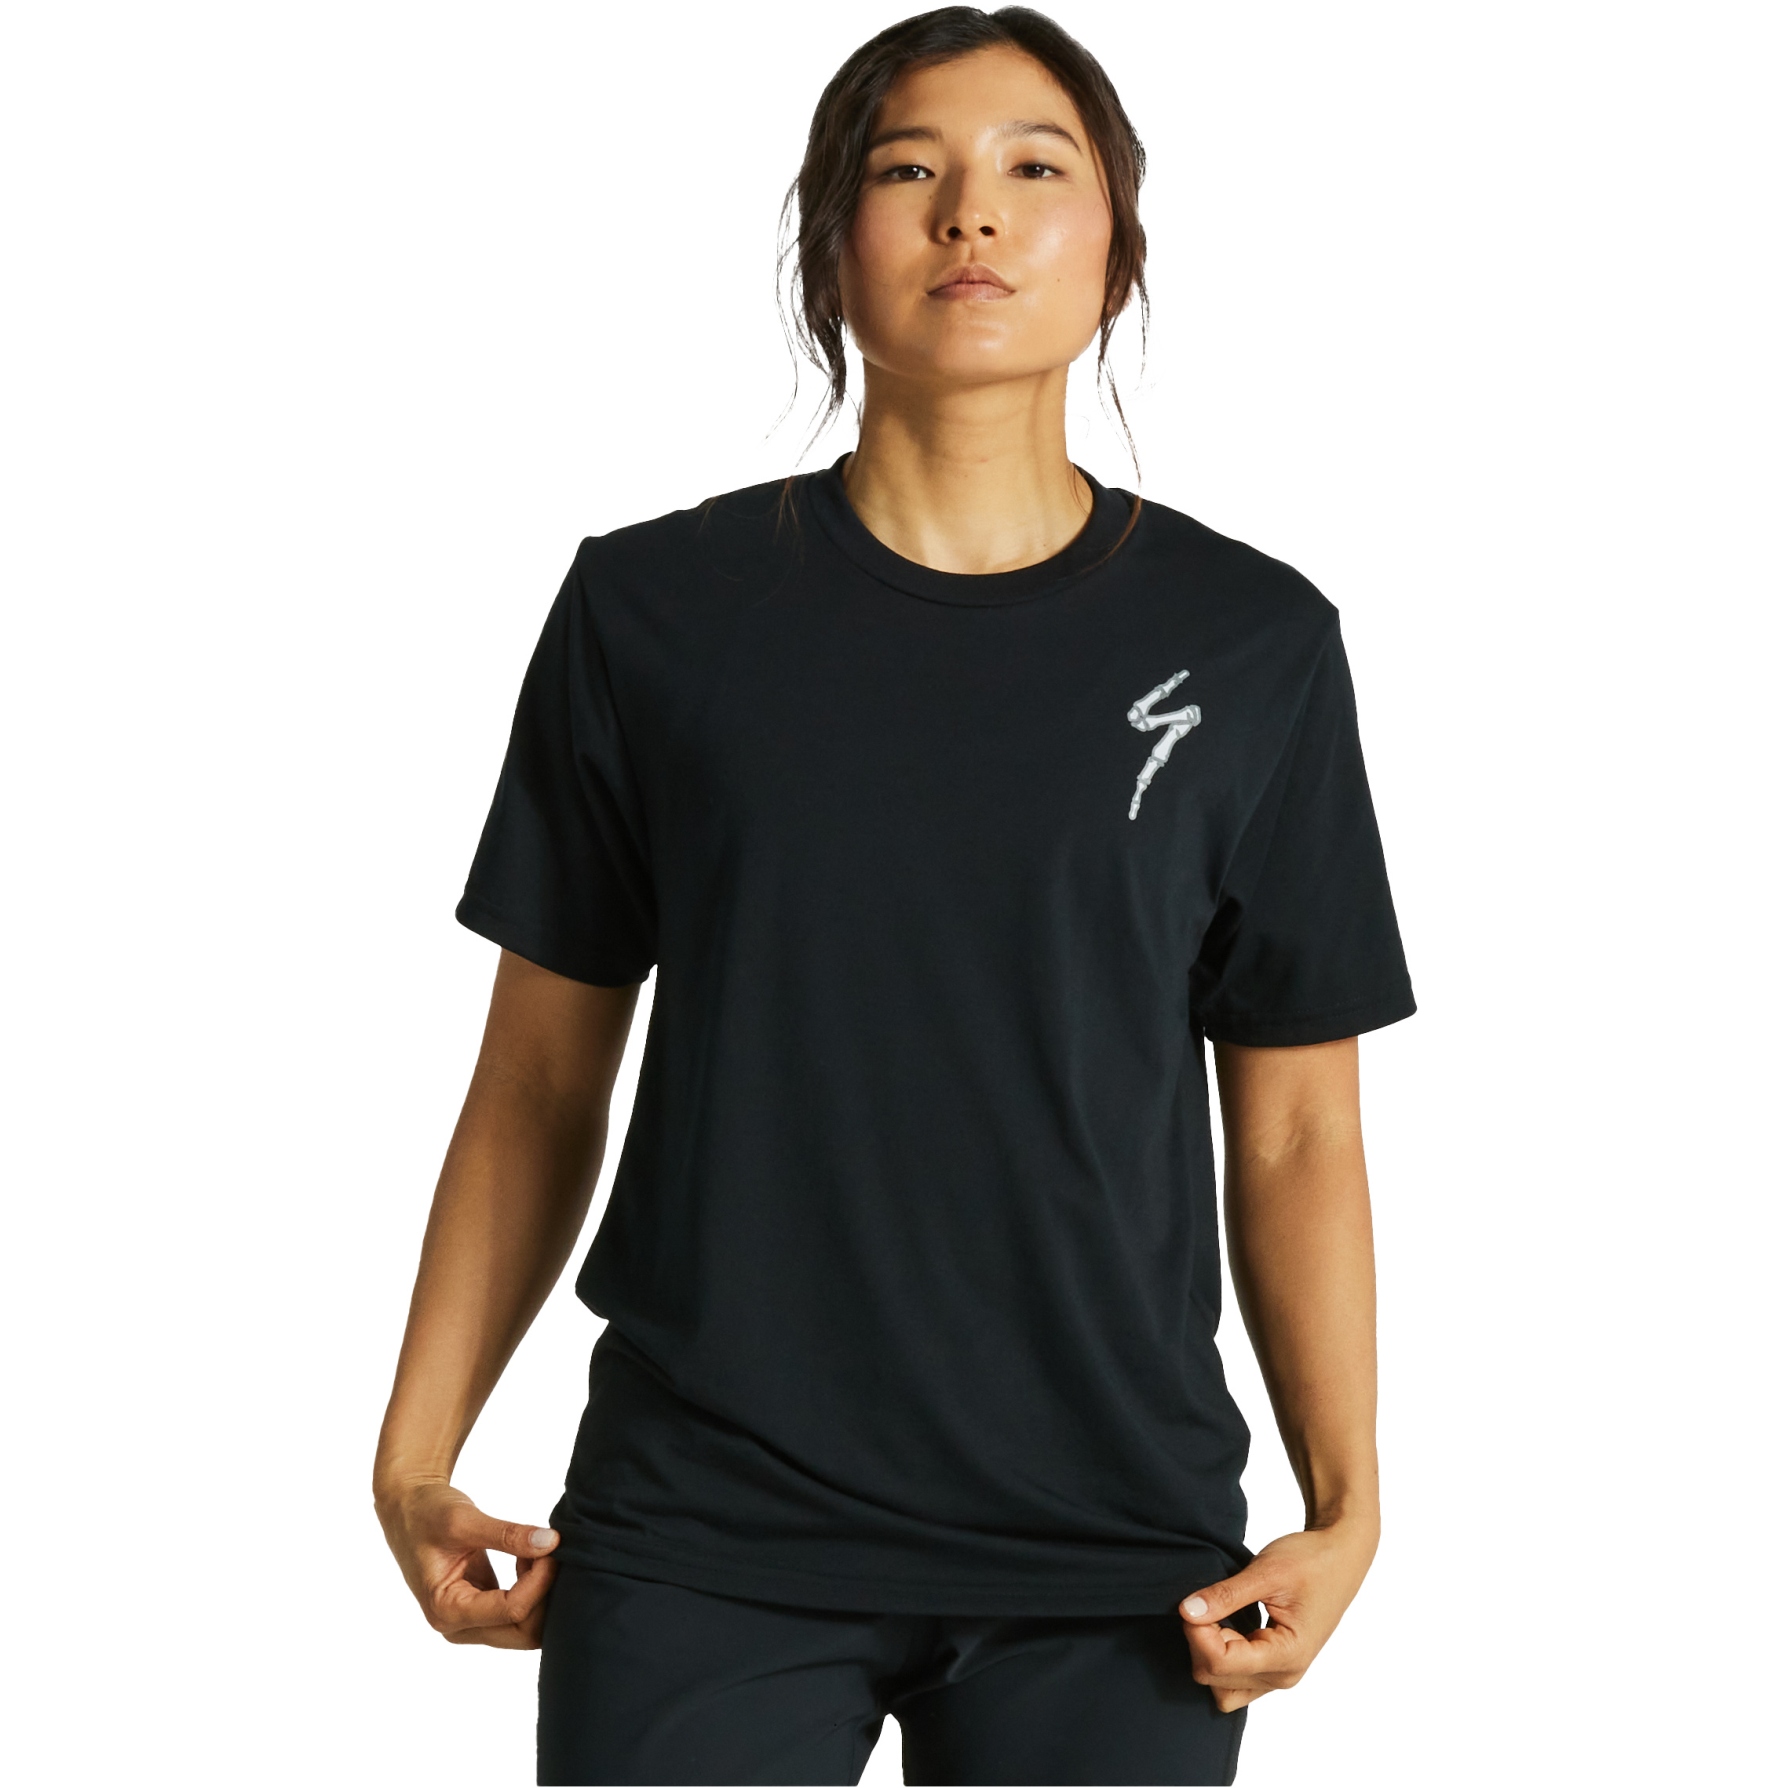 Produktbild von Specialized Bones T-Shirt Unisex - schwarz